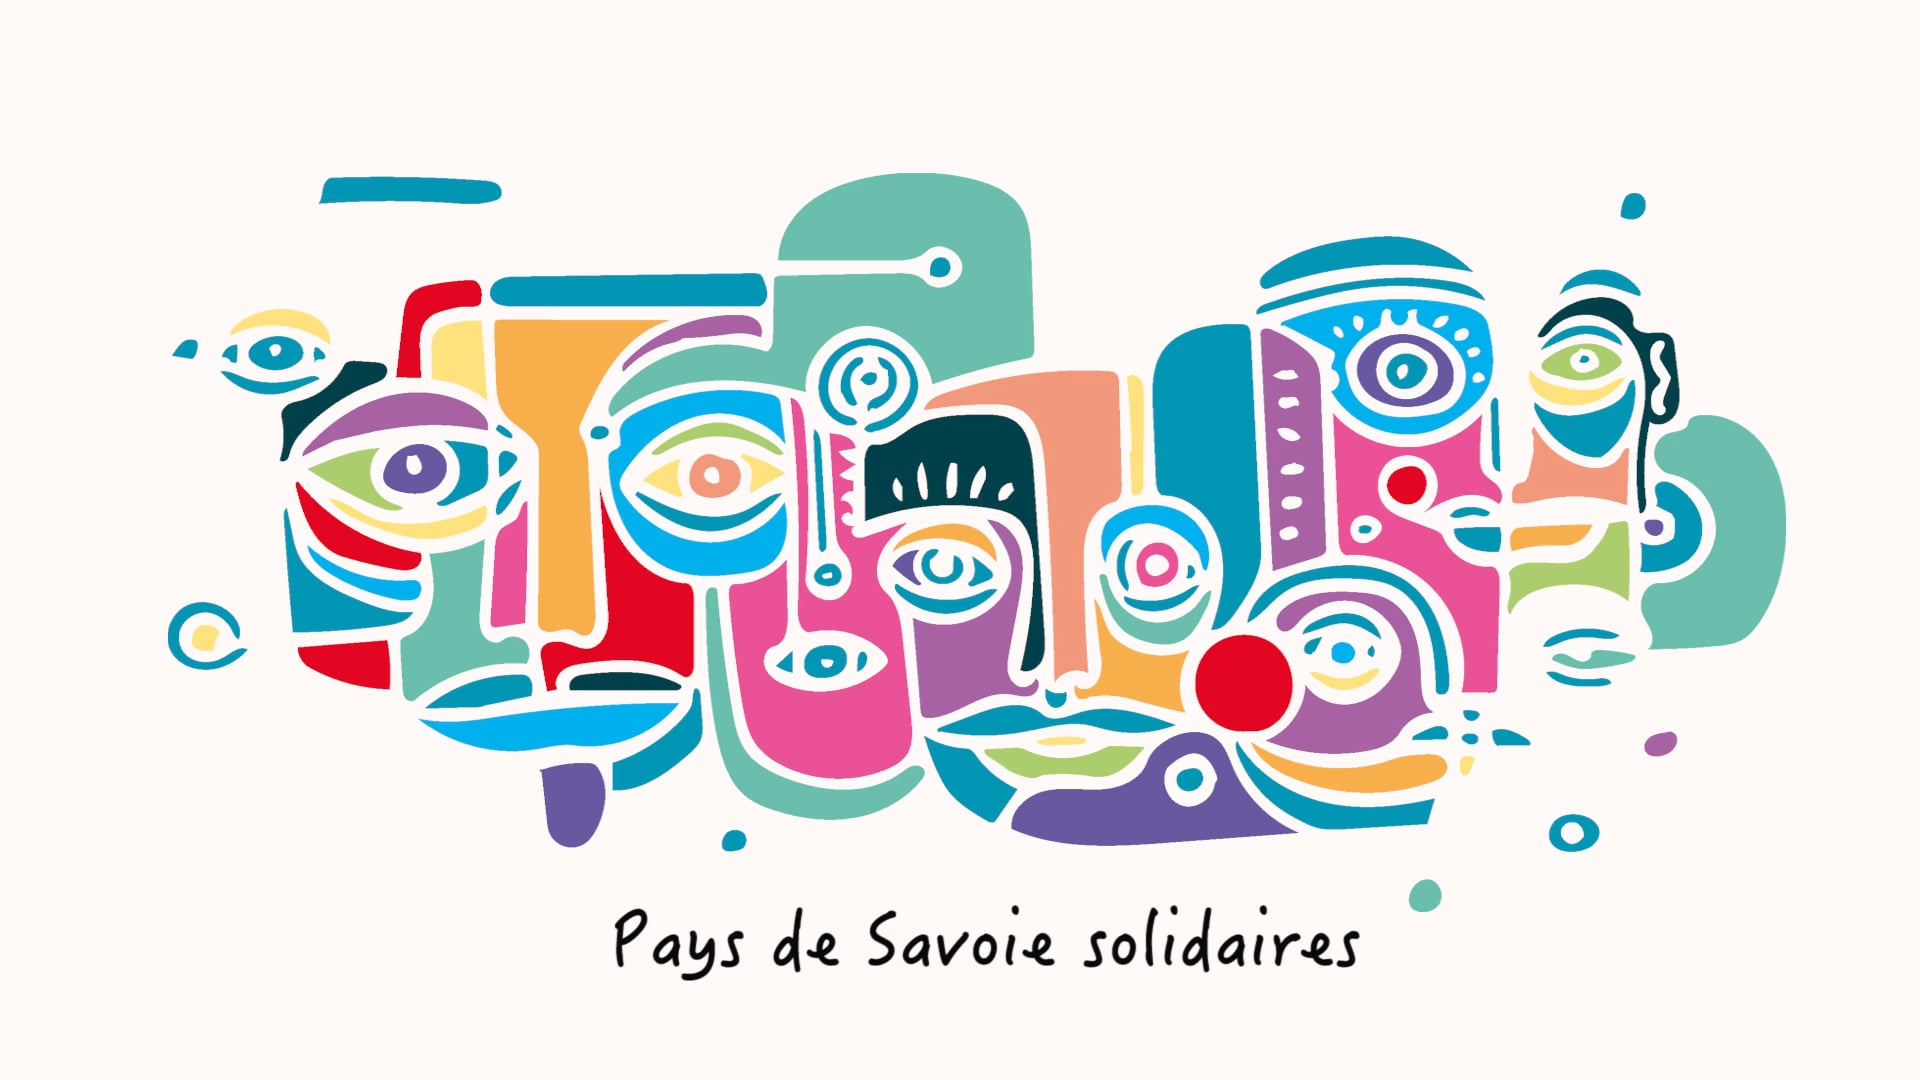 Pays De Savoie solidaires